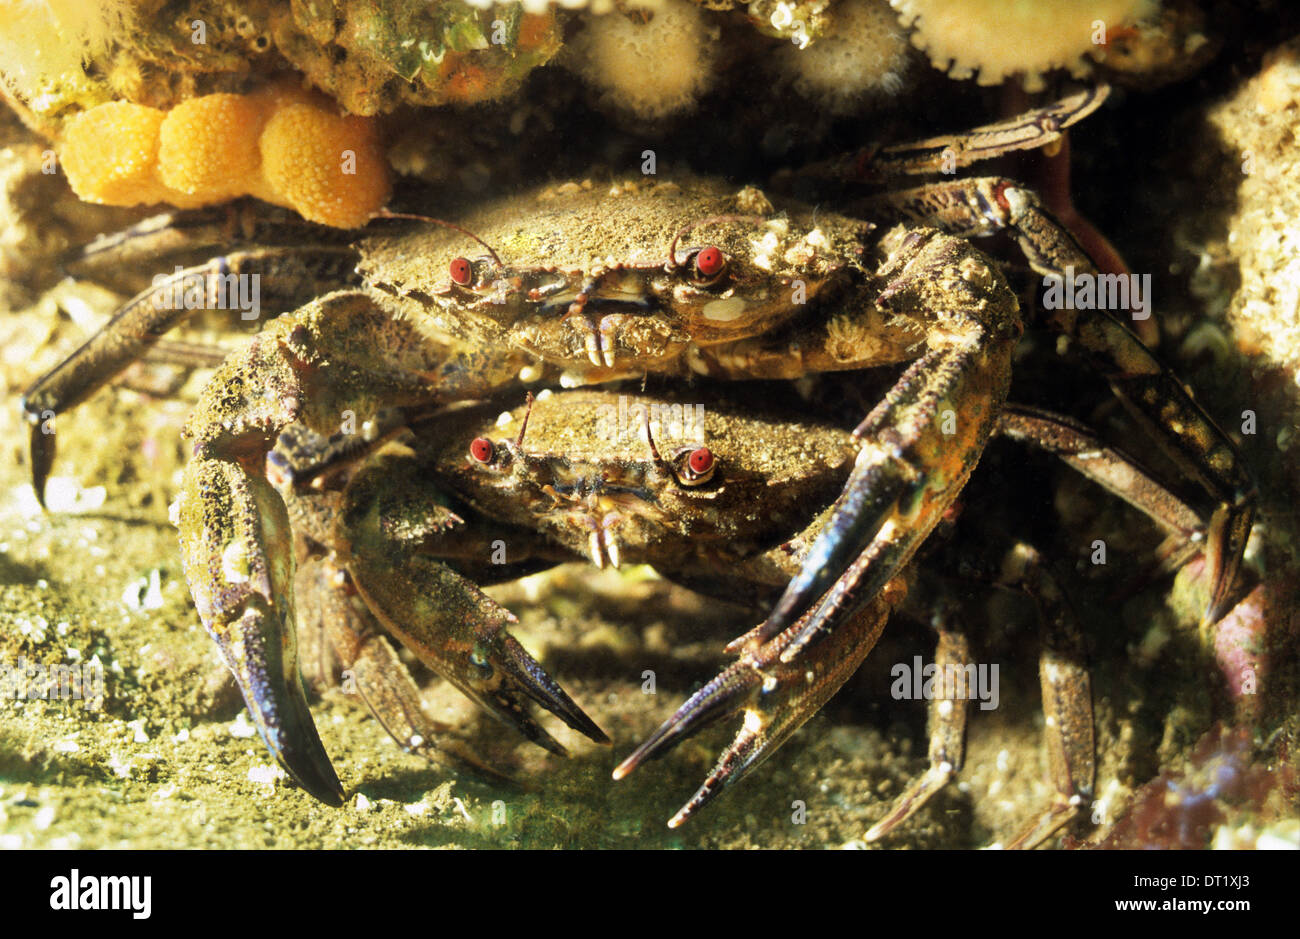 Piscine de velours des crabes. St Abbs sous réserve marine. Incroyable la vie sous-marine au large de la côte britannique. Banque D'Images